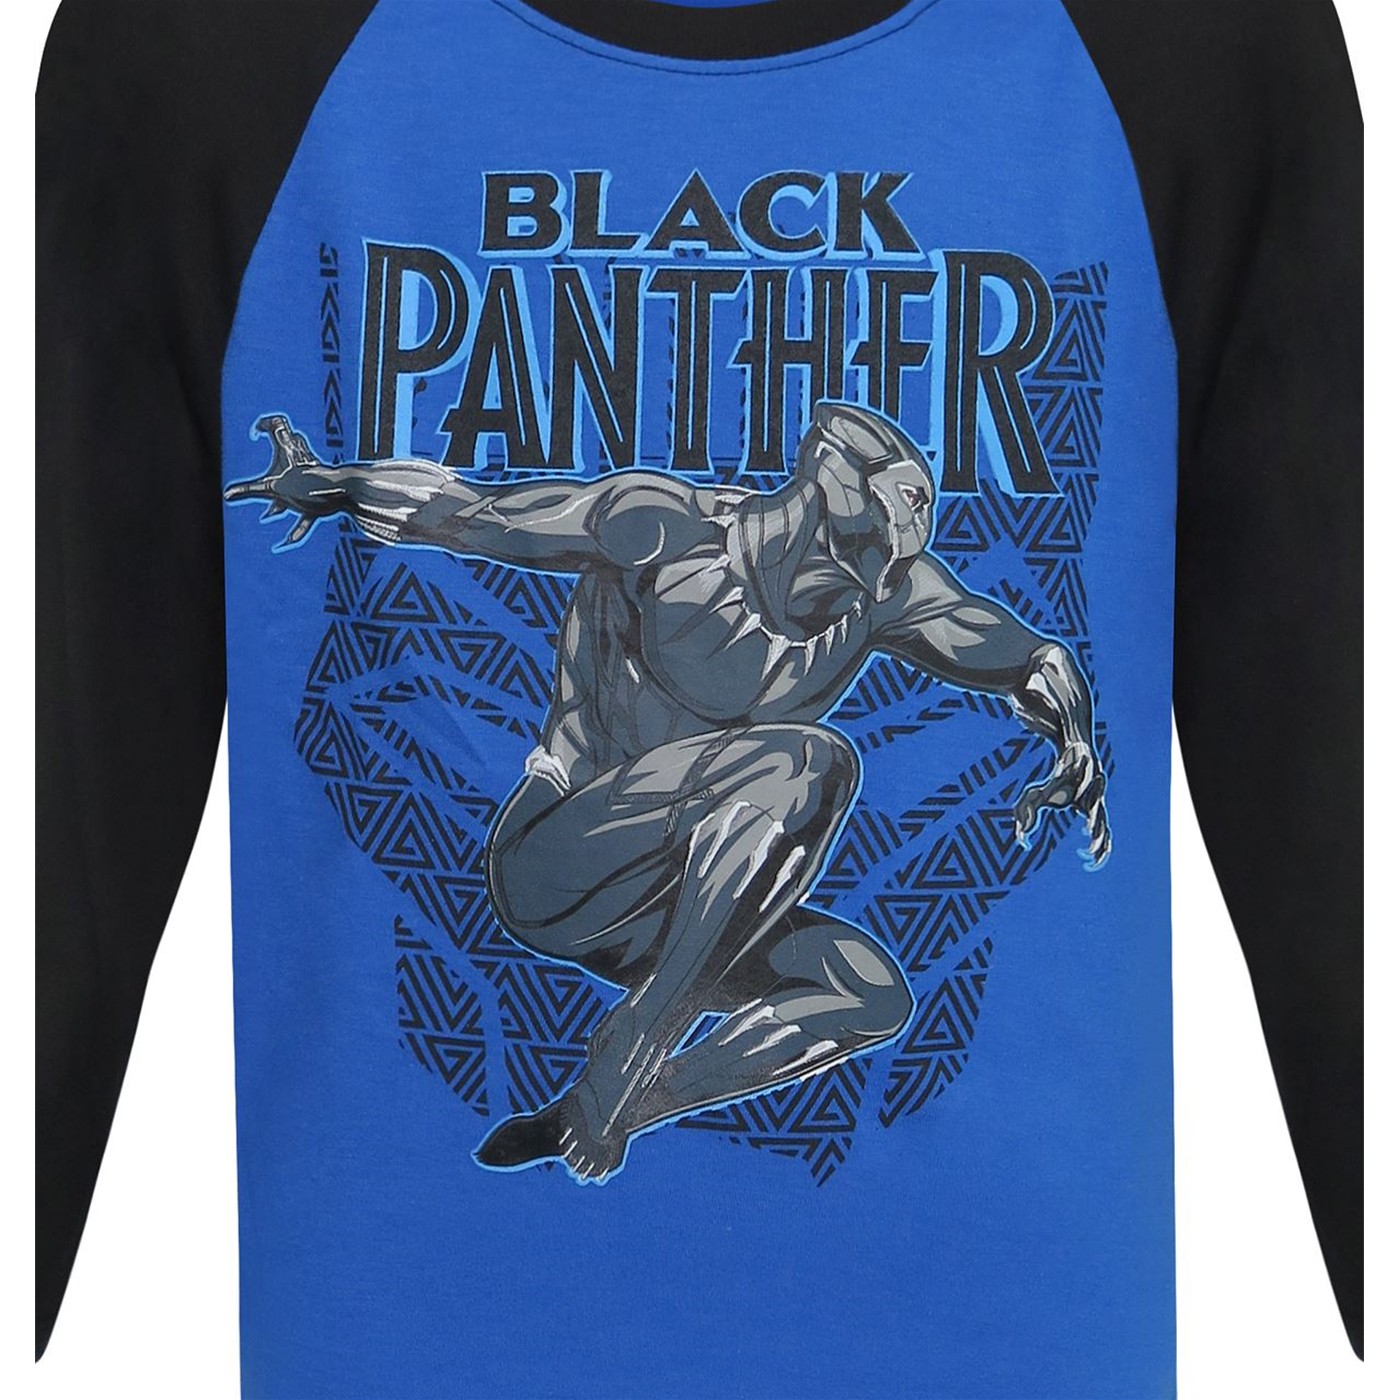 Black Panther Leap Kids Baseball T-Shirt